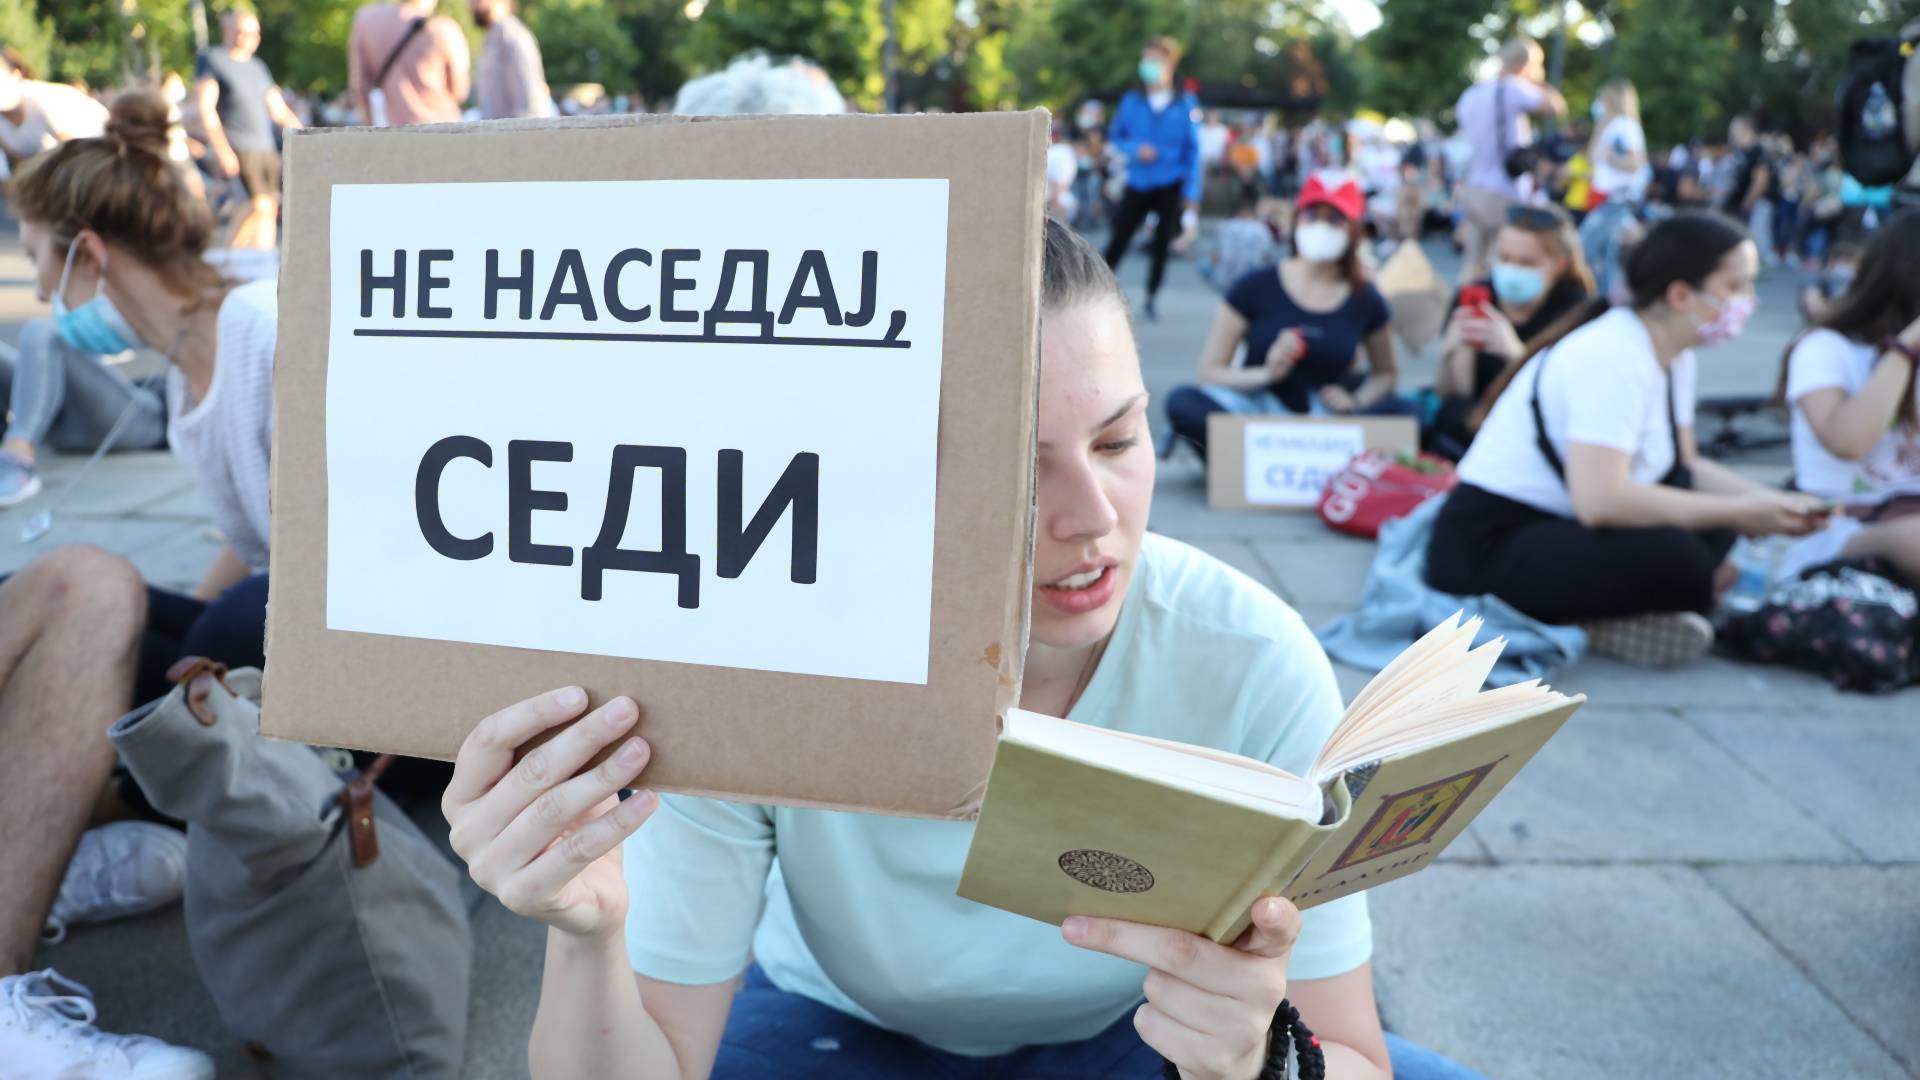 Šta mi kao studentu nedostaje na demonstracijama u Beogradu